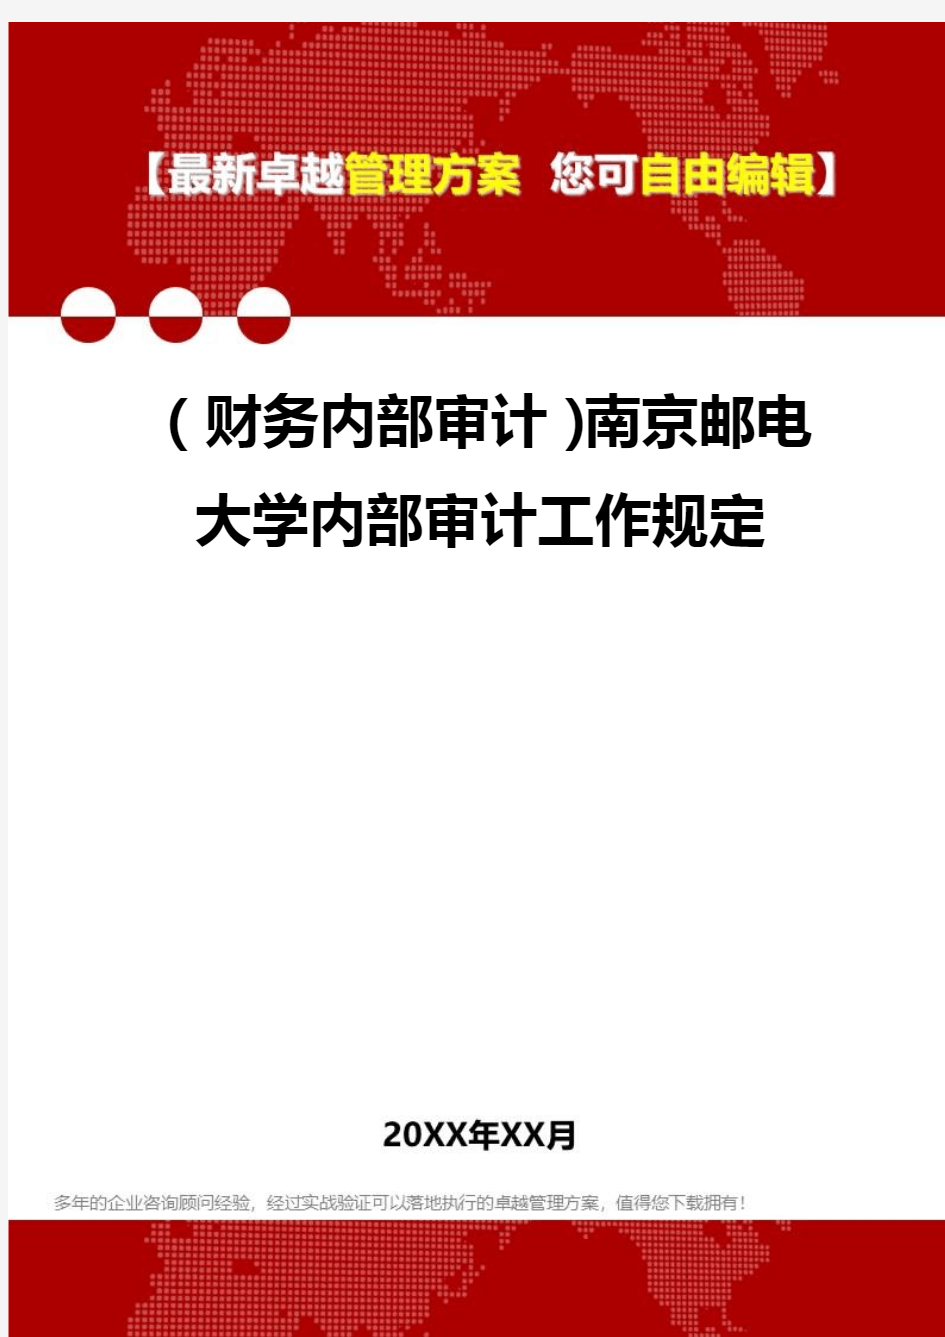 2020年(财务内部审计)南京邮电大学内部审计工作规定